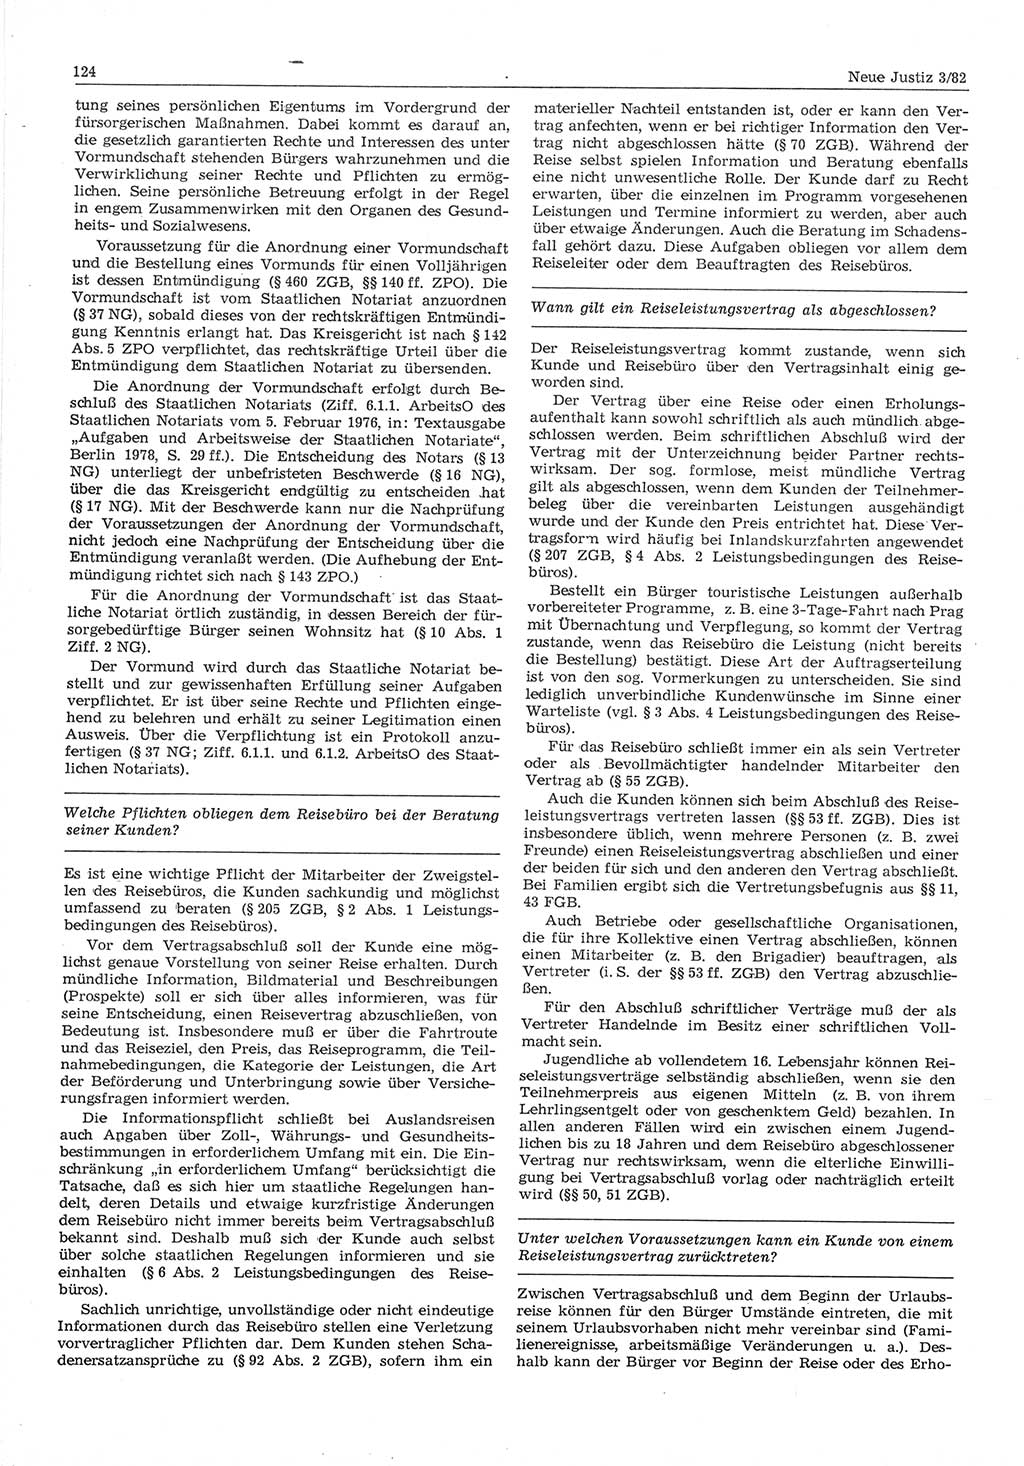 Neue Justiz (NJ), Zeitschrift für sozialistisches Recht und Gesetzlichkeit [Deutsche Demokratische Republik (DDR)], 36. Jahrgang 1982, Seite 124 (NJ DDR 1982, S. 124)